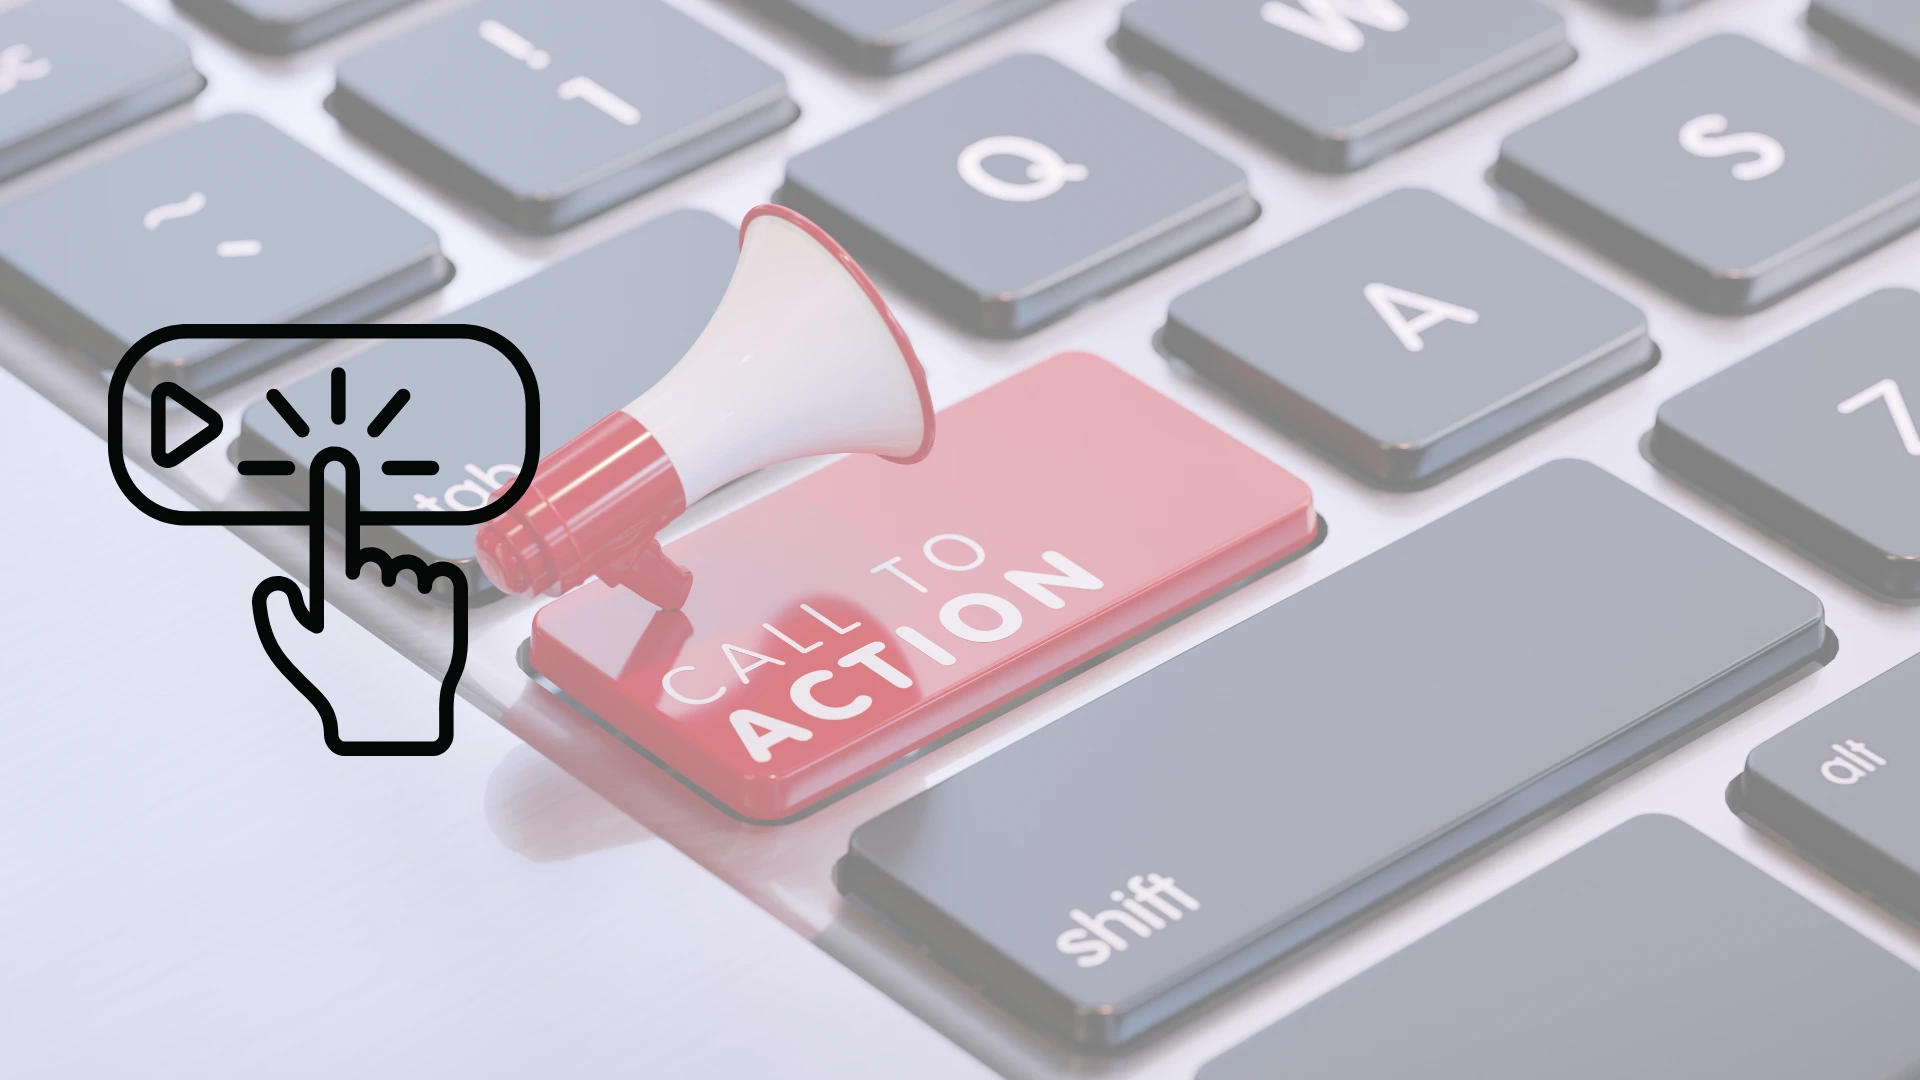 Teclado de laptop con un botón que dice "call to action"